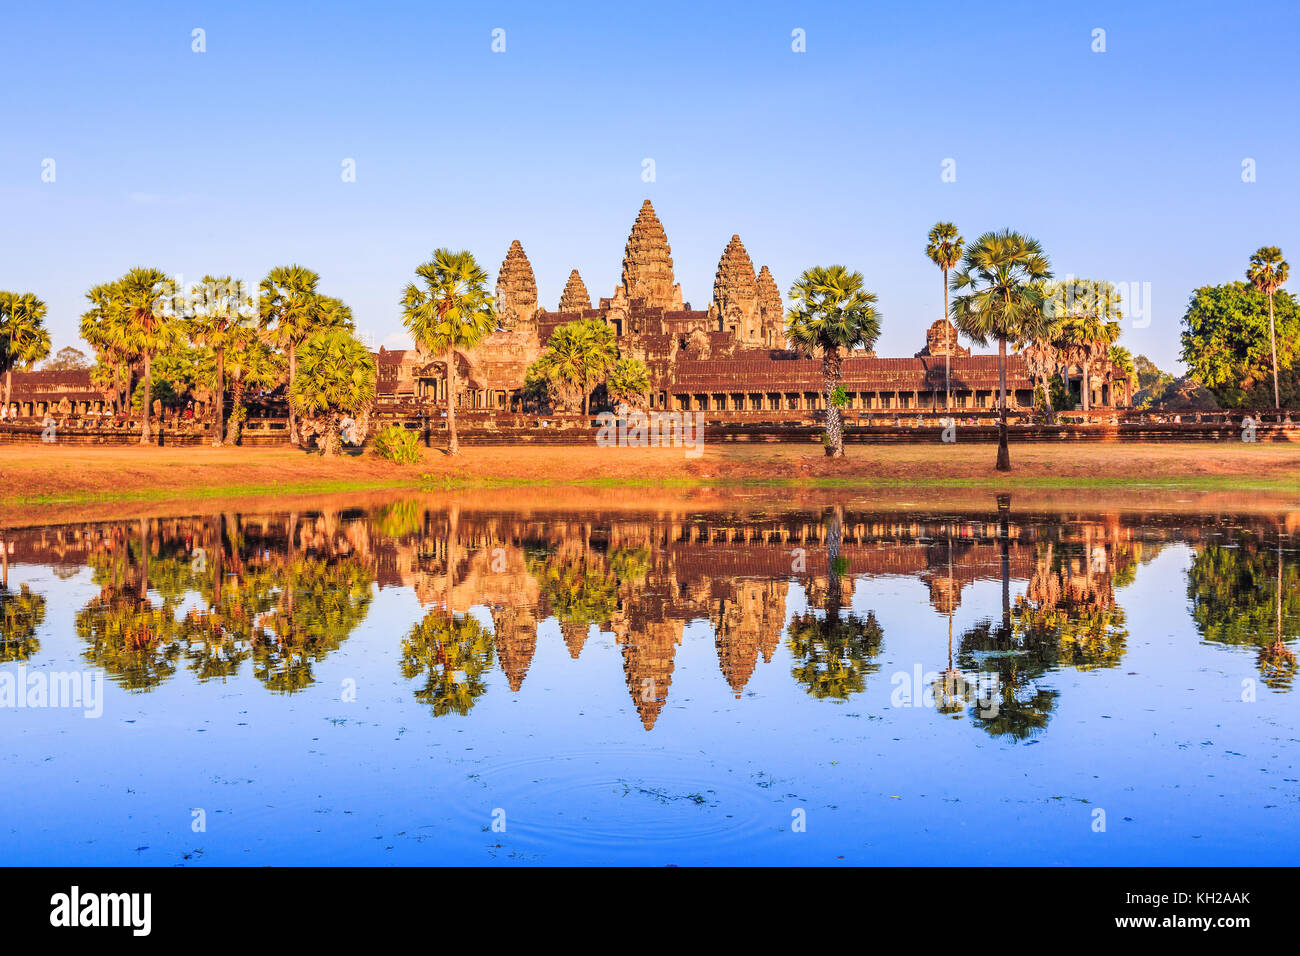 Angkor Wat, Camboya. vista desde el otro lado del lago. Foto de stock